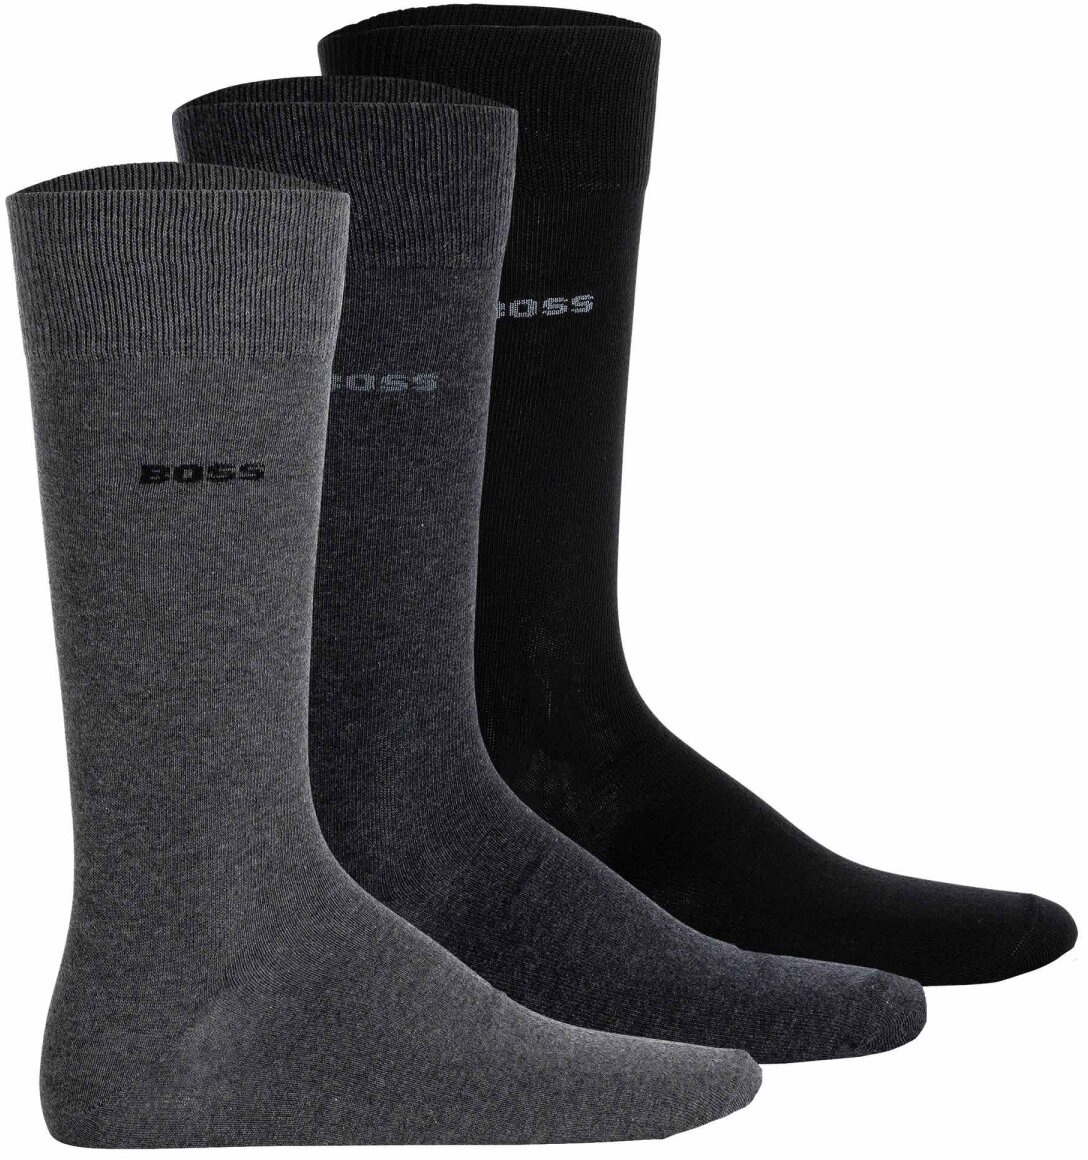 BOSS Herren Socken, 3er Pack - 3P RS Uni Colors CC, Finest Soft Cotton, Baumwoll-Mix Schwarz/Grau 39-42